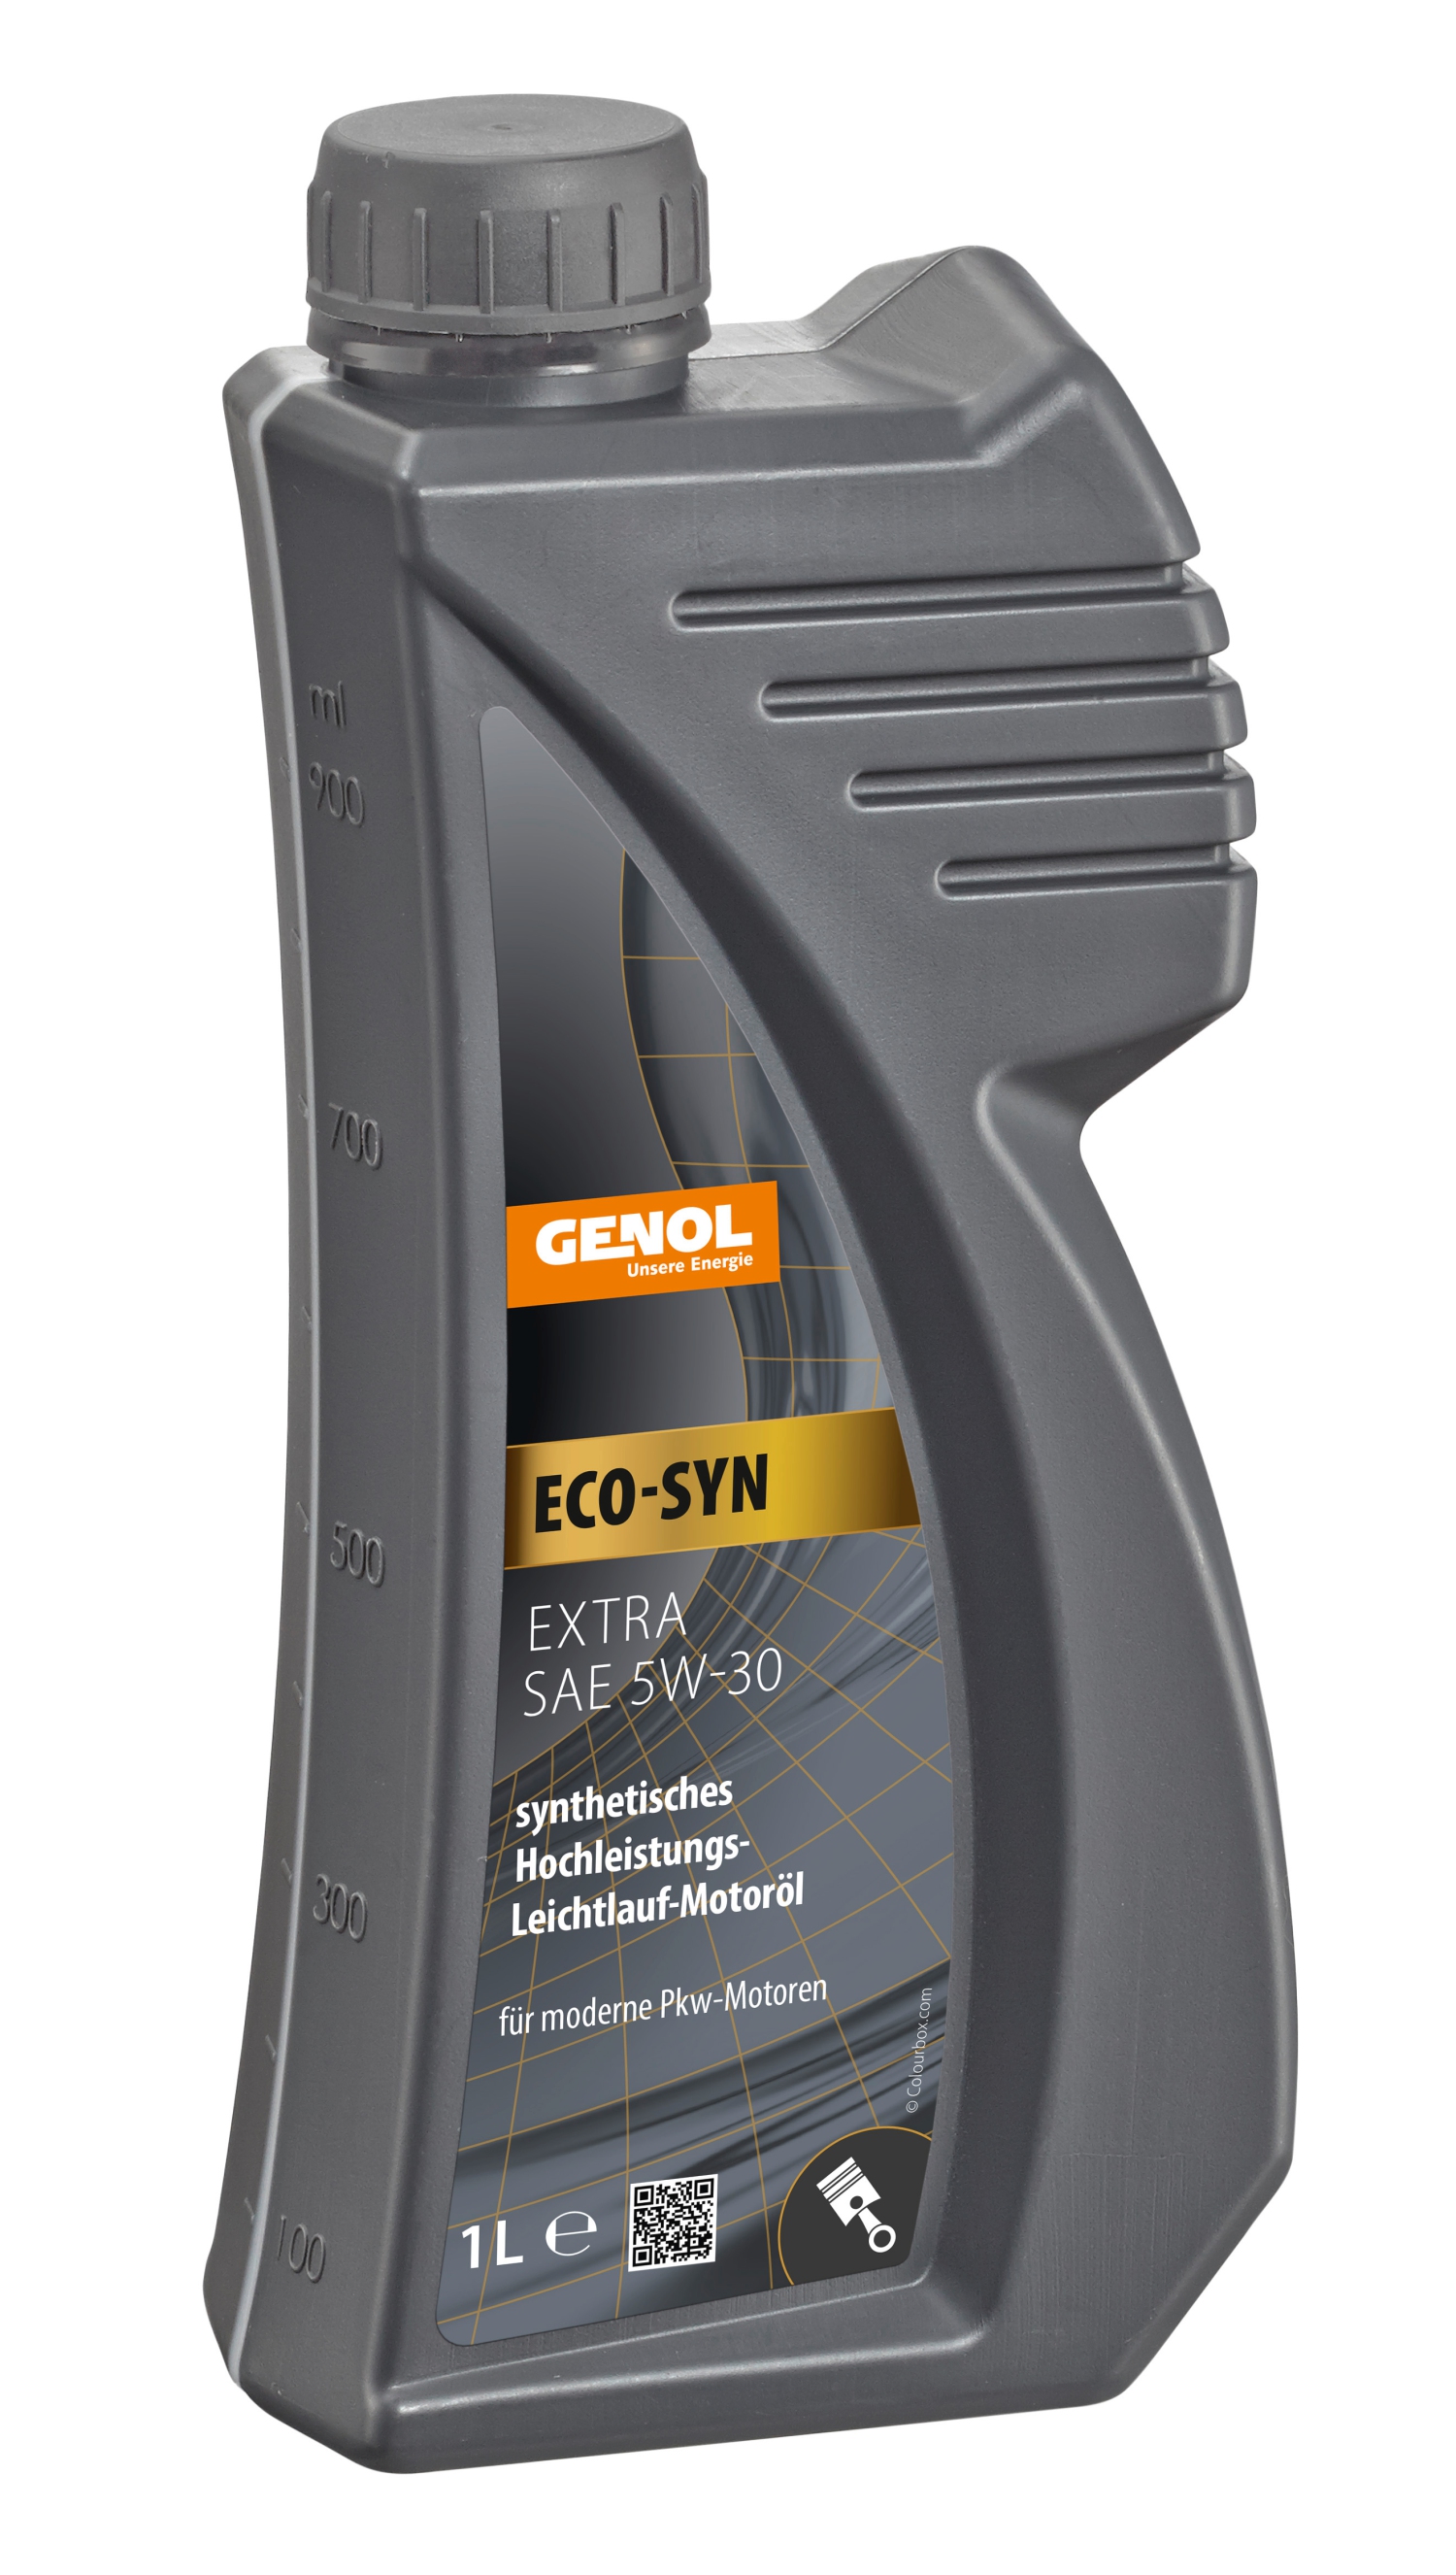 GENOL Eco-Syn Extra 5W-30, Motoröl